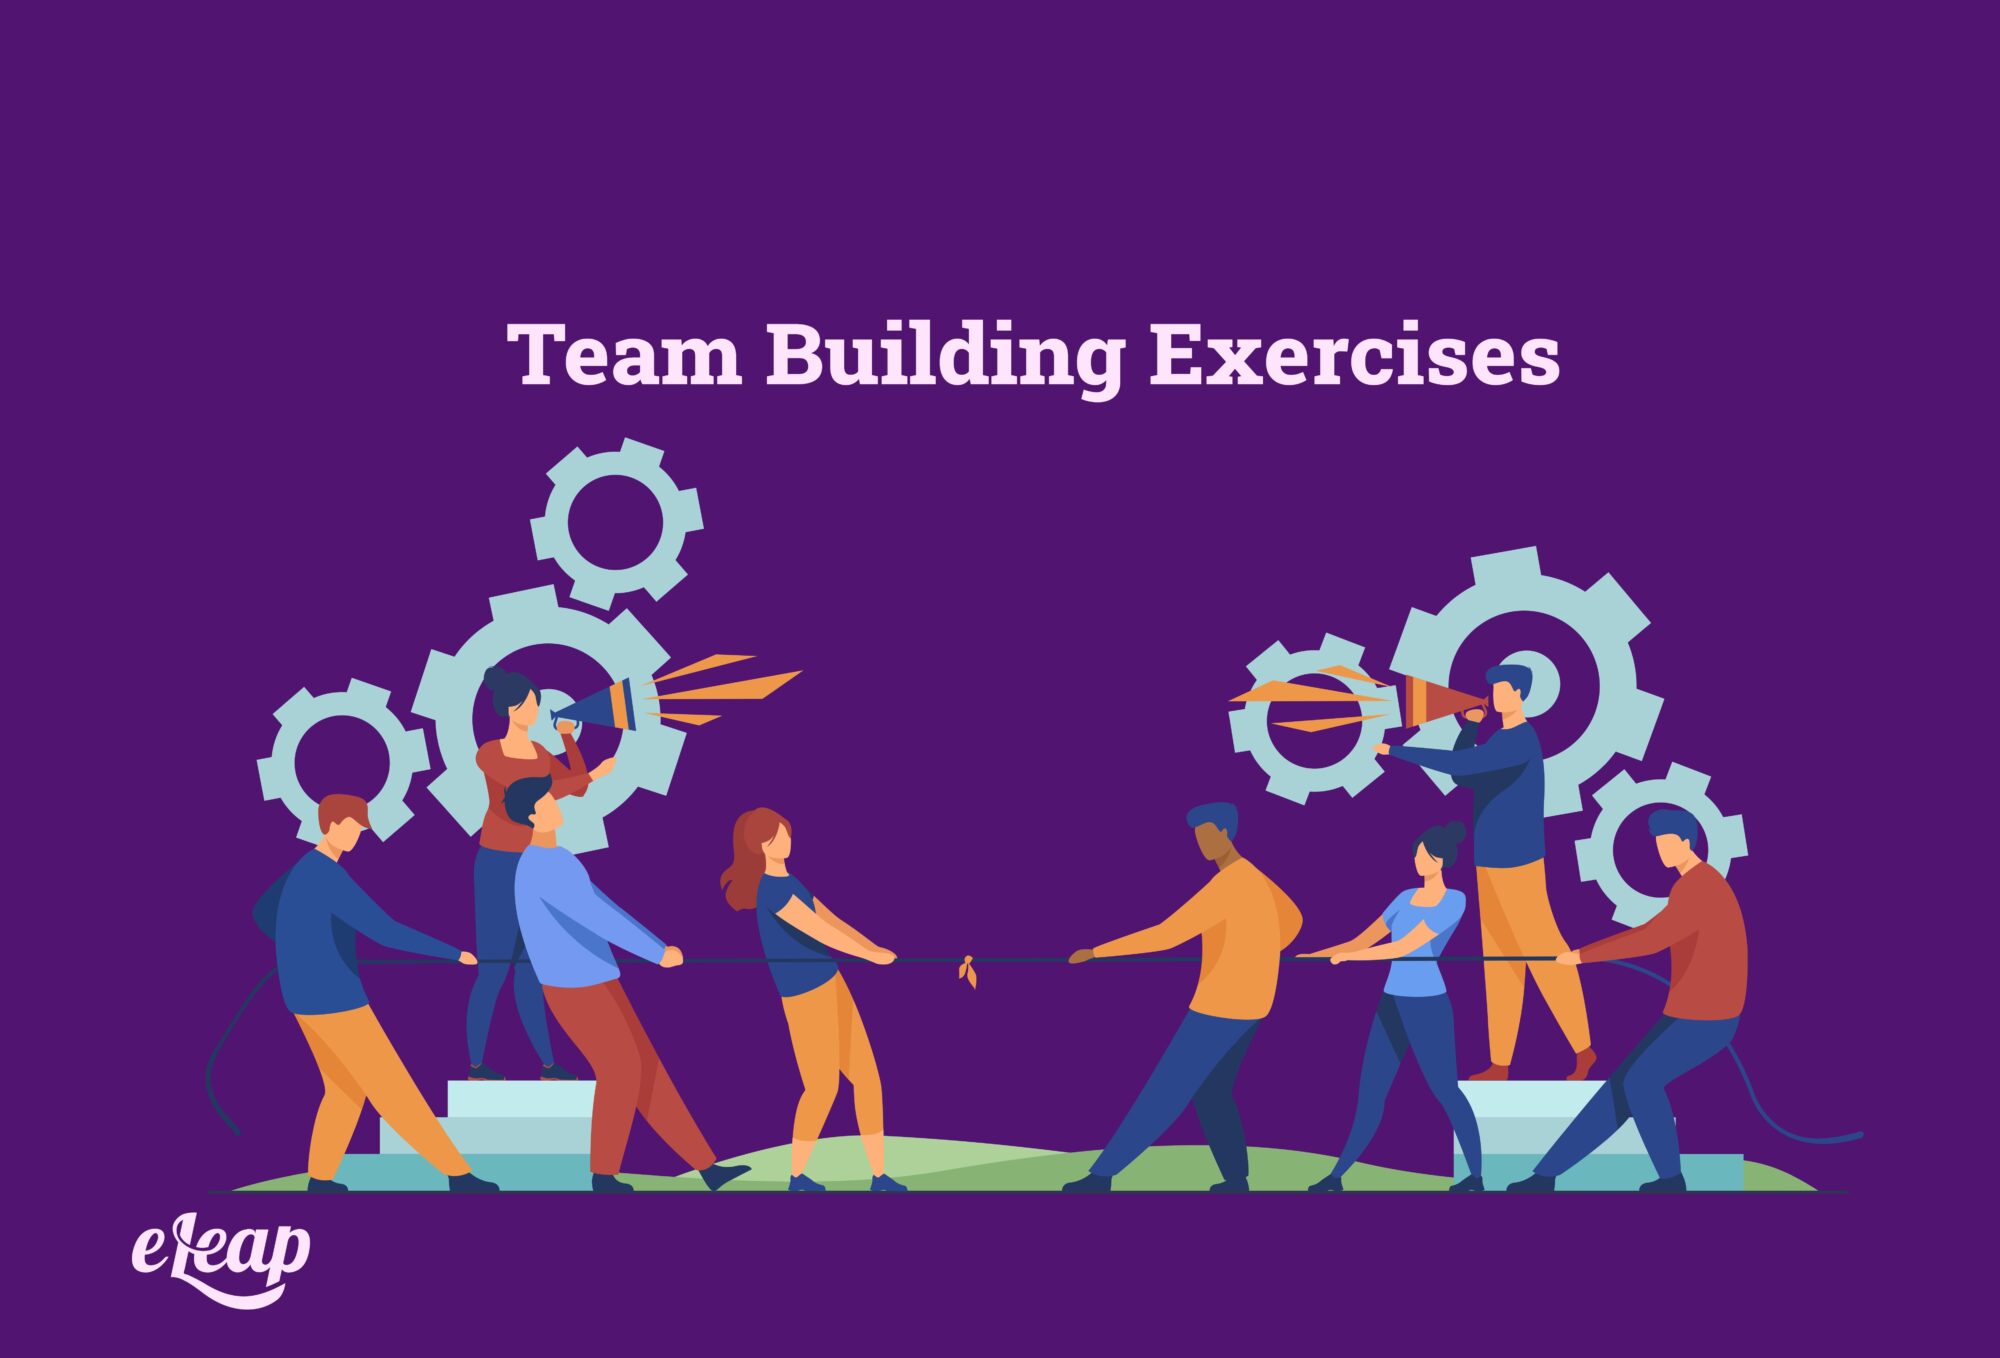 Team building exercises